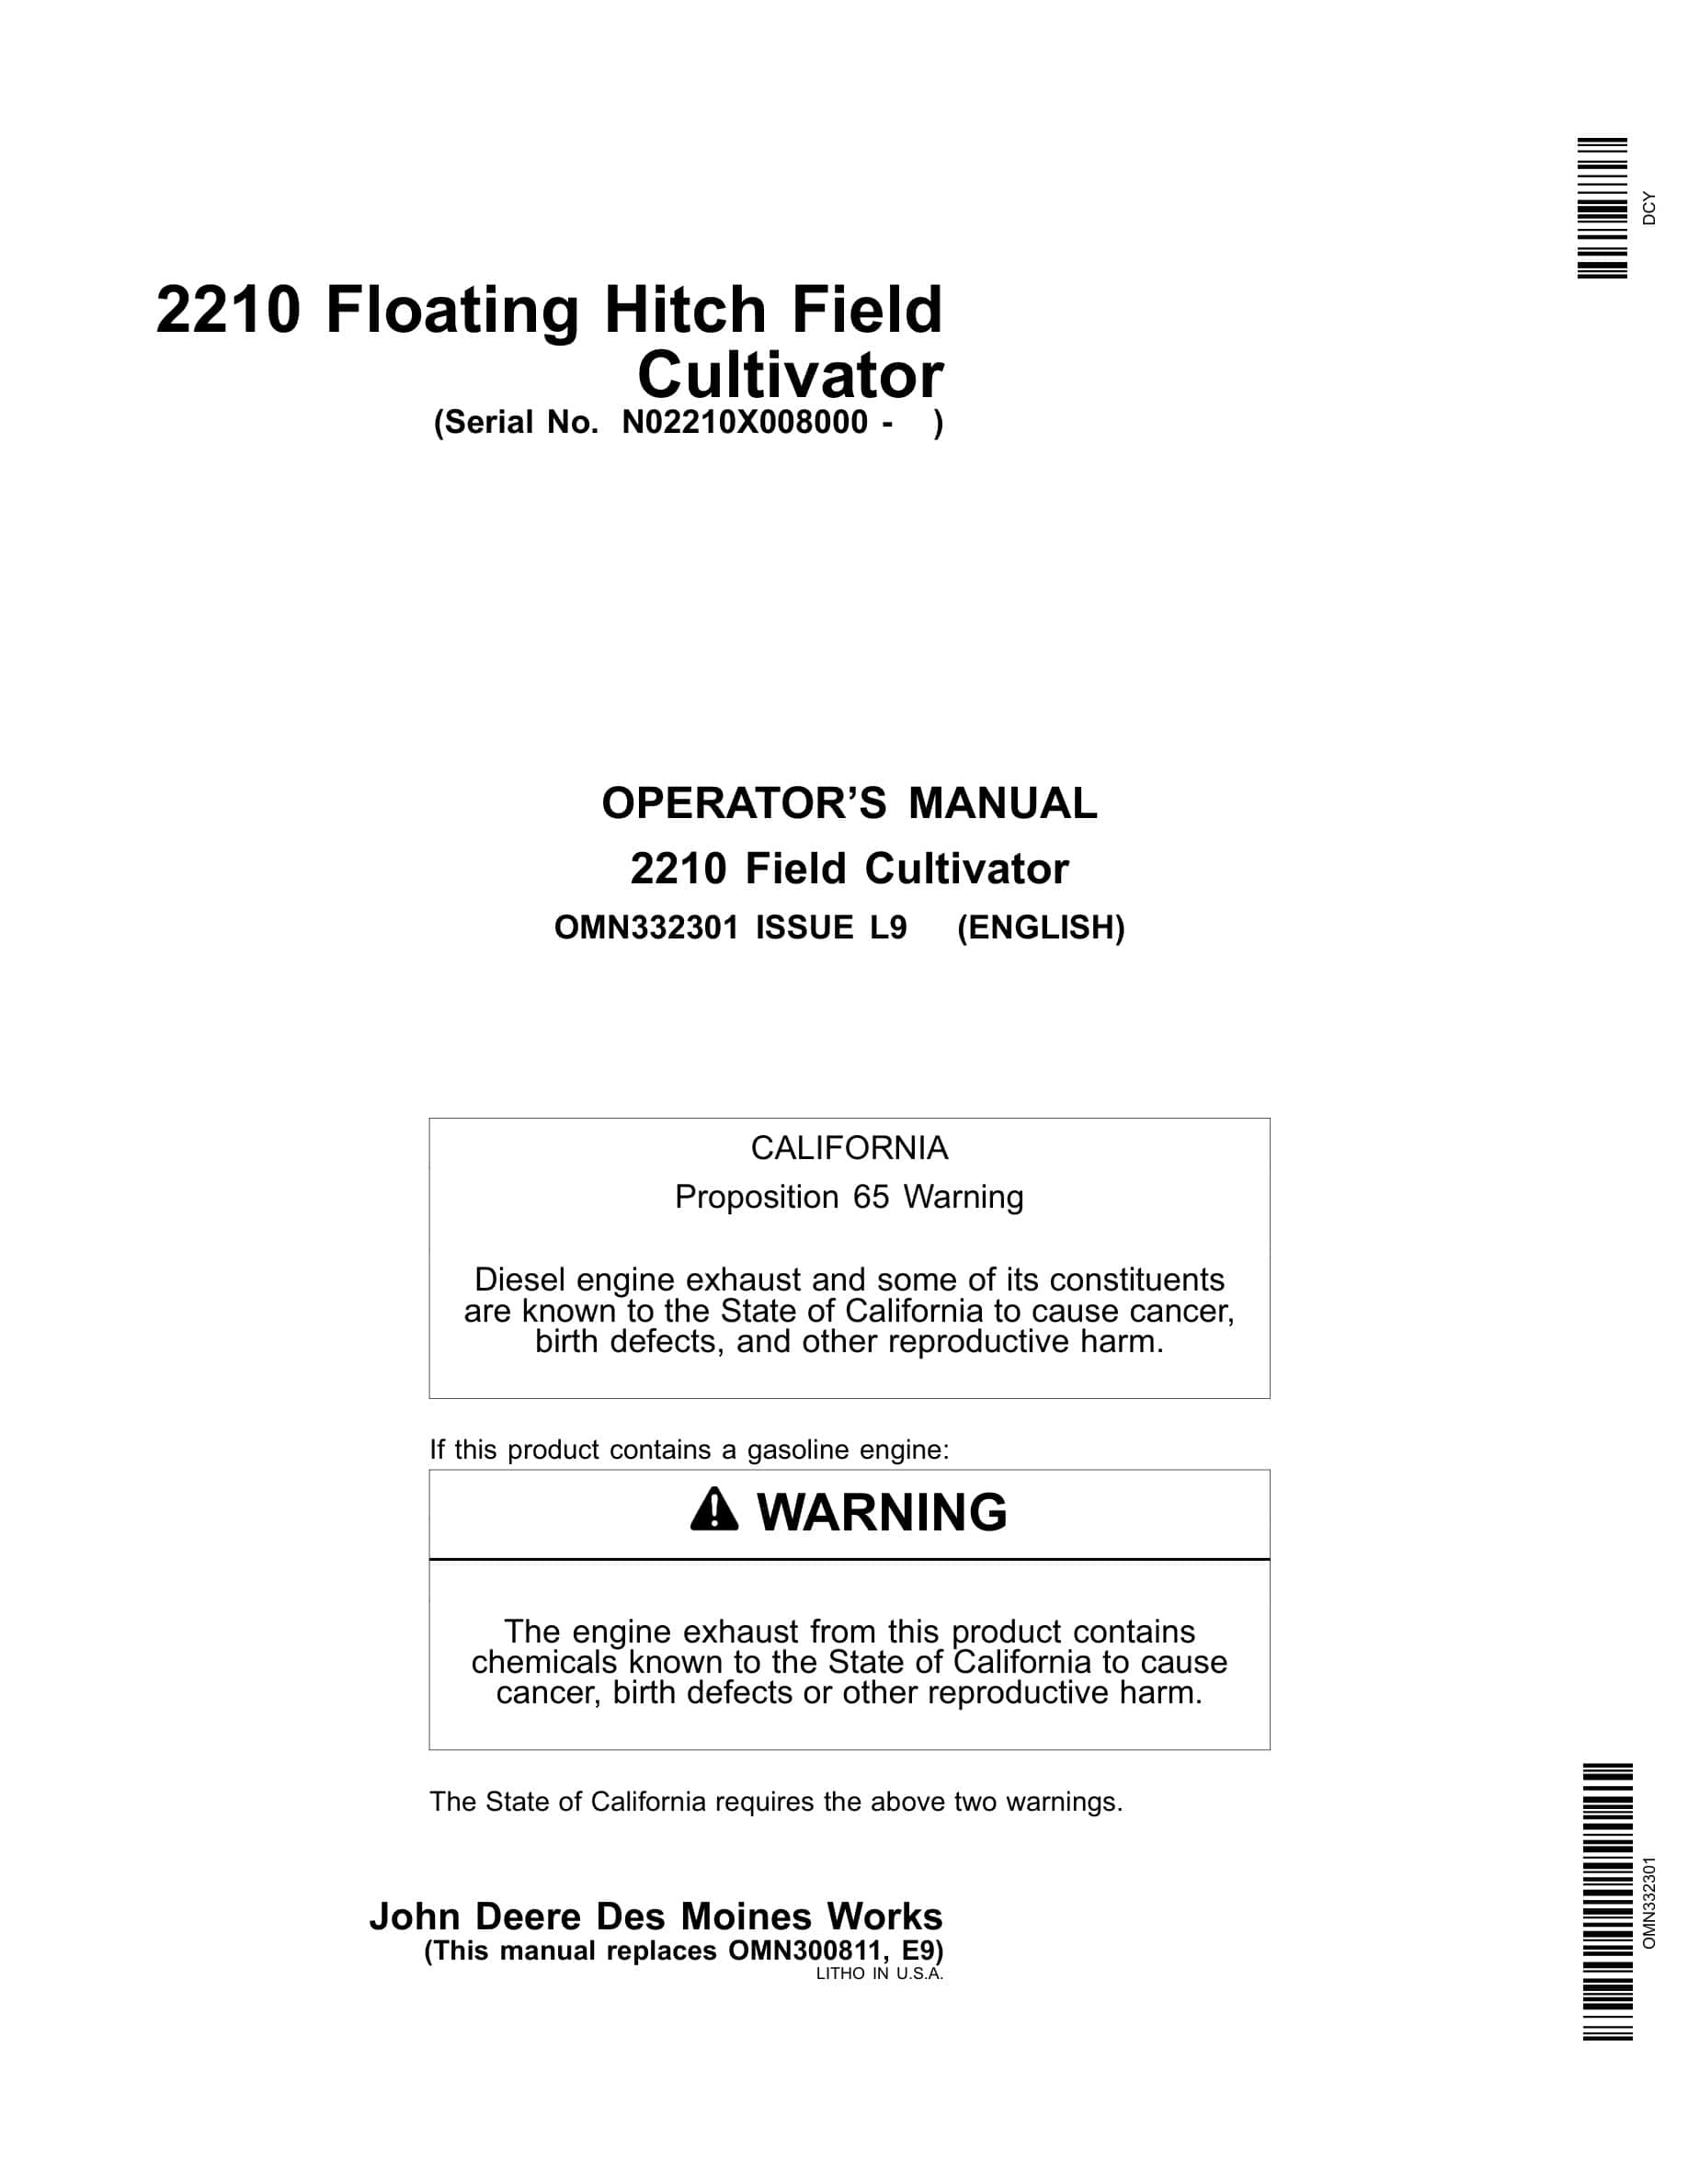 John Deere 2210 Floating Hitch Field Cultivator Operator Manual OMN332301-1